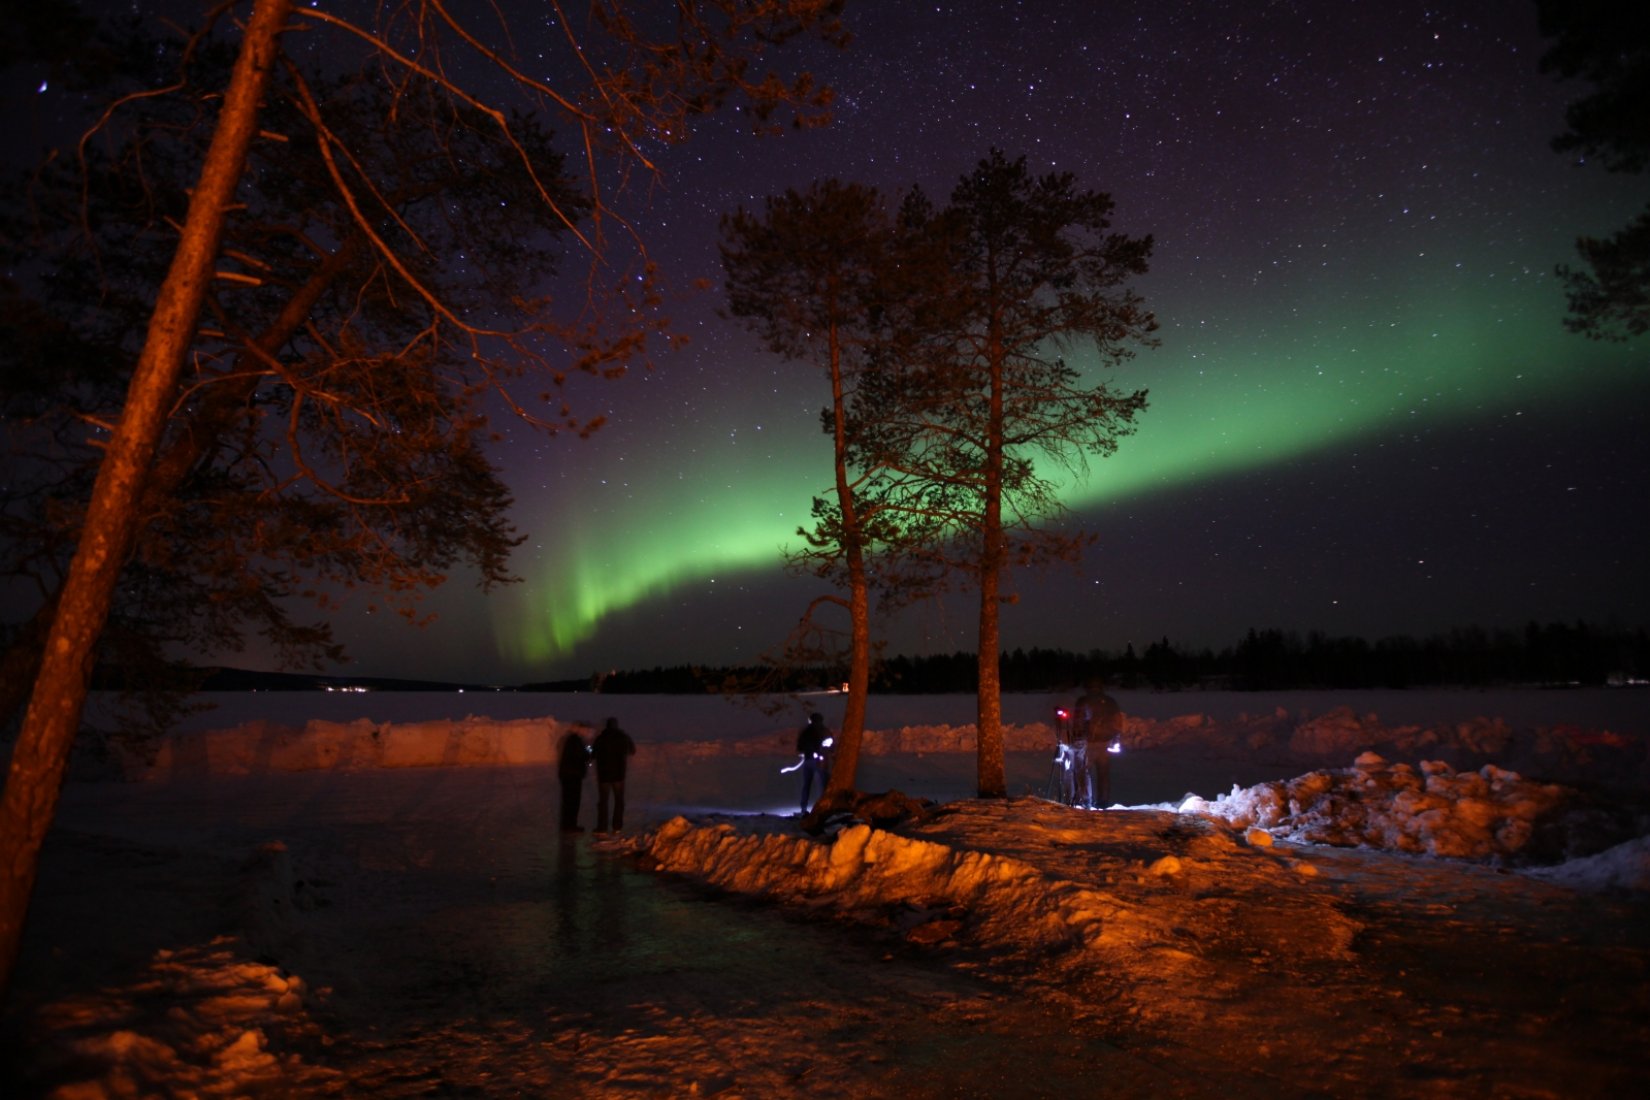 Laponya'da kuzey ışıklarını gördüm